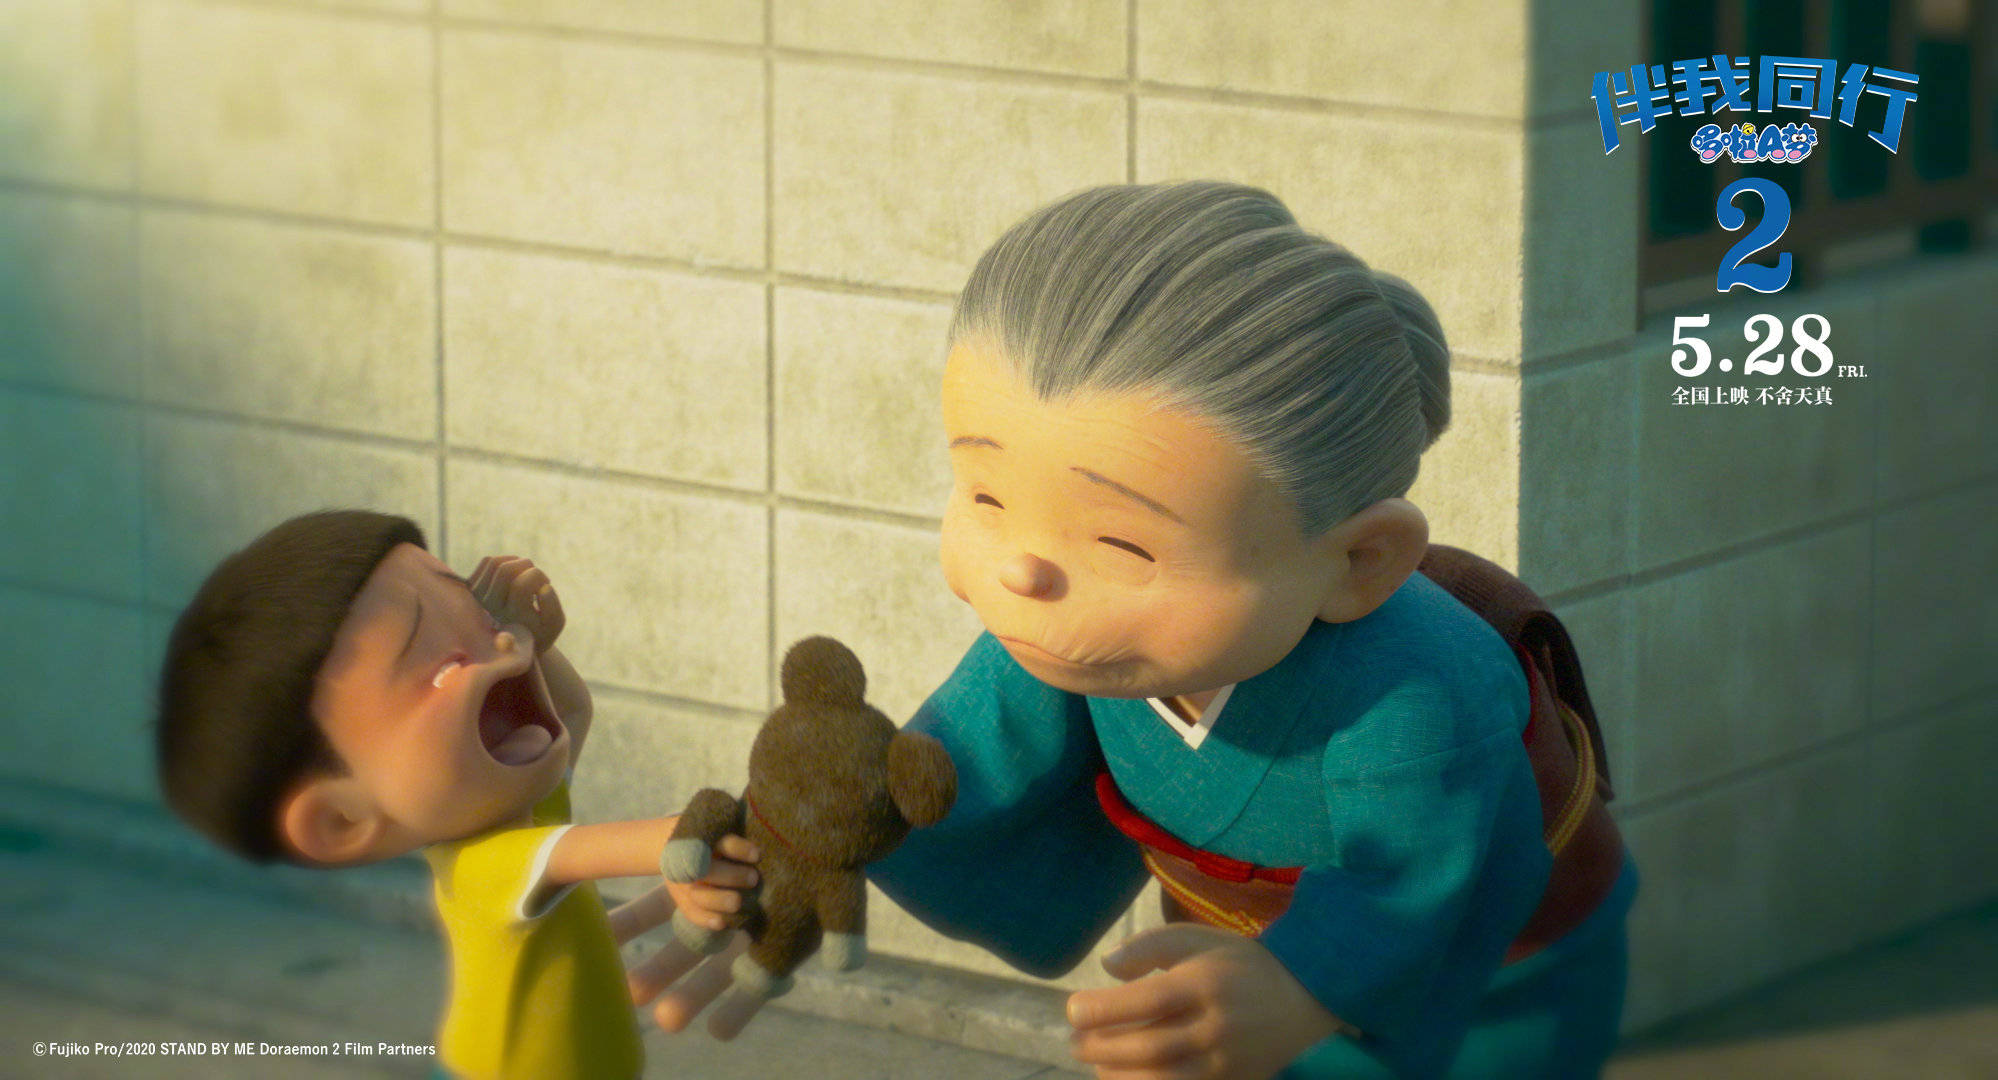 《哆啦a梦:伴我同行2》曝最新预告 大雄与奶奶跨时空感人相拥